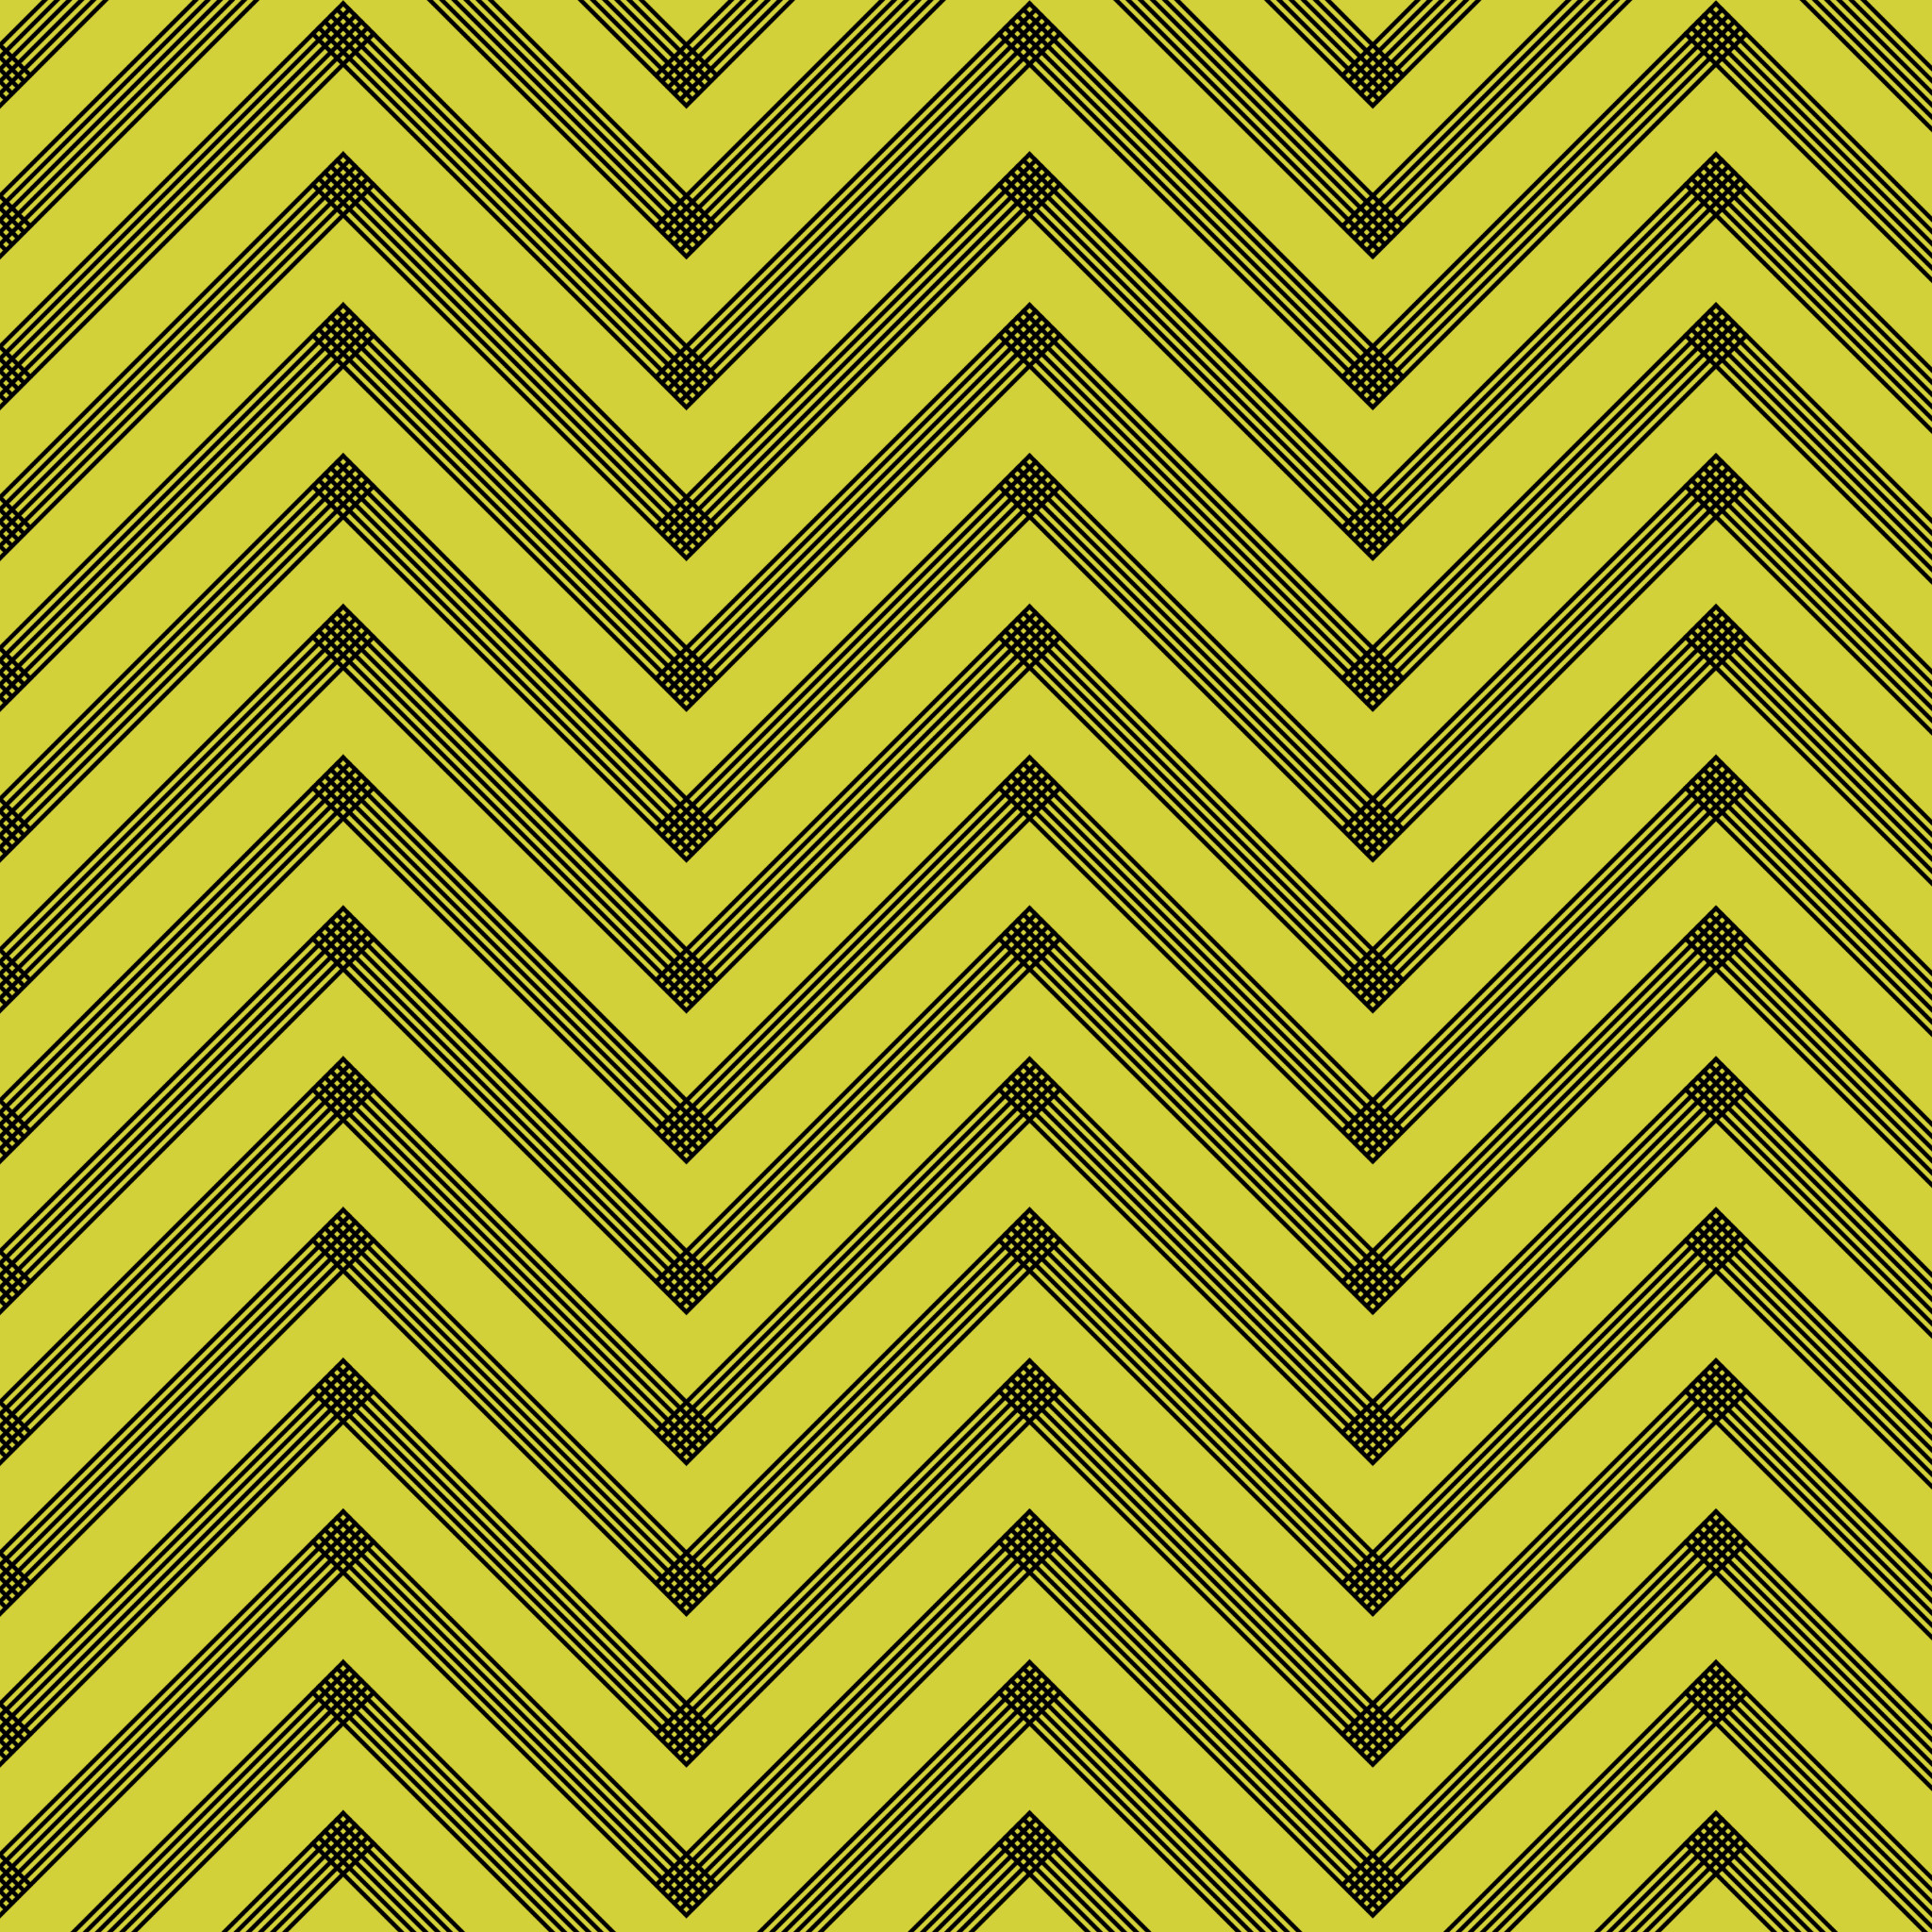 yellow chevron wallpaper,pattern,yellow,green,line,brown